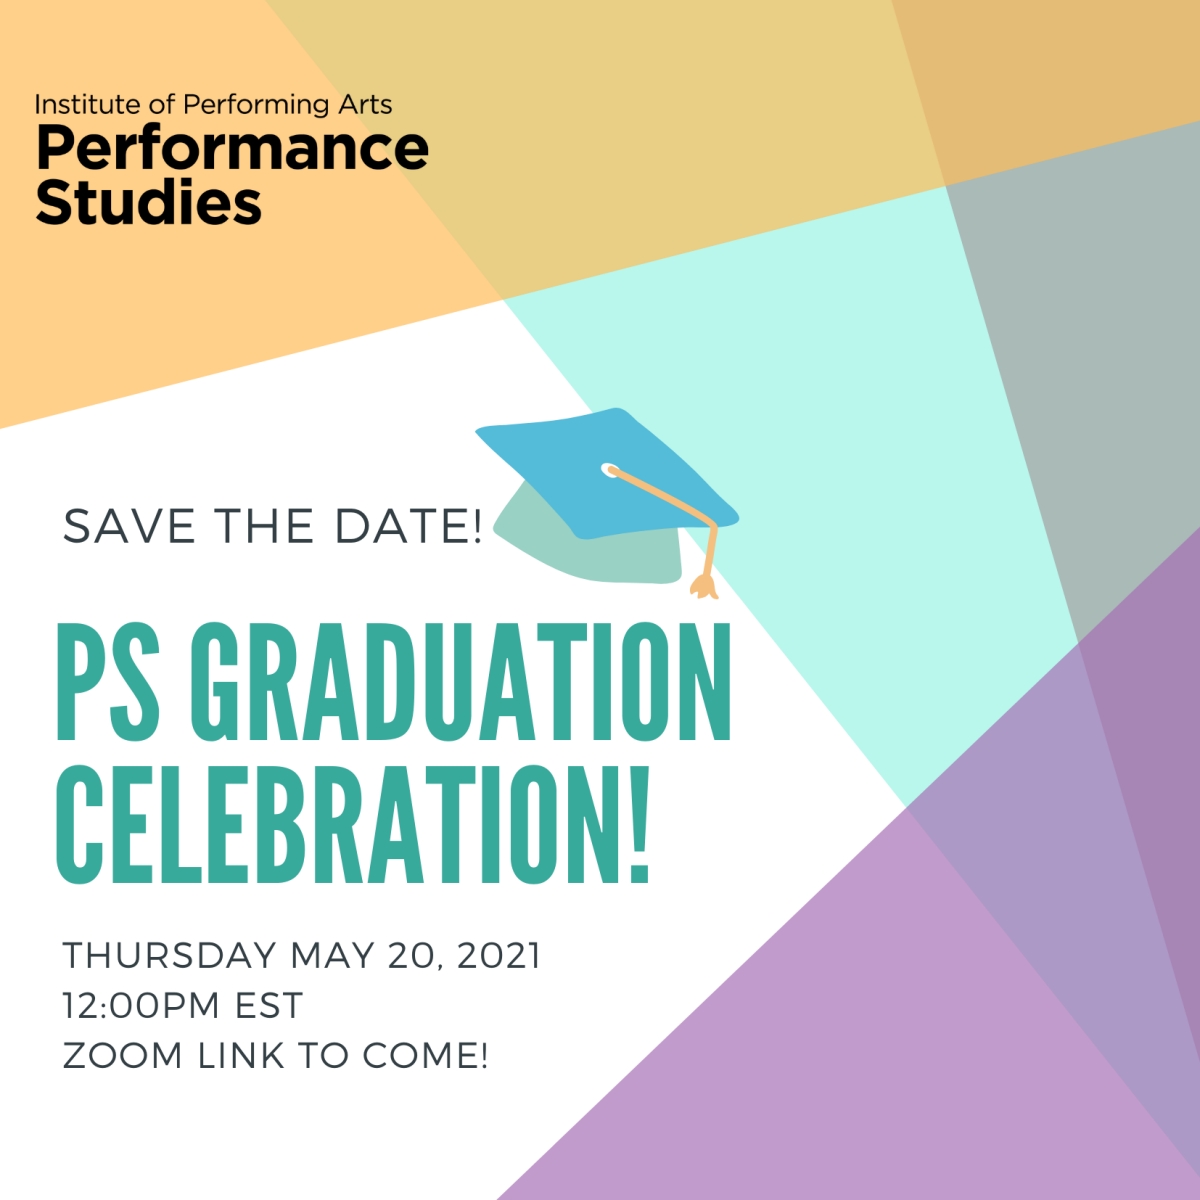 PS Graduation Celebration invite